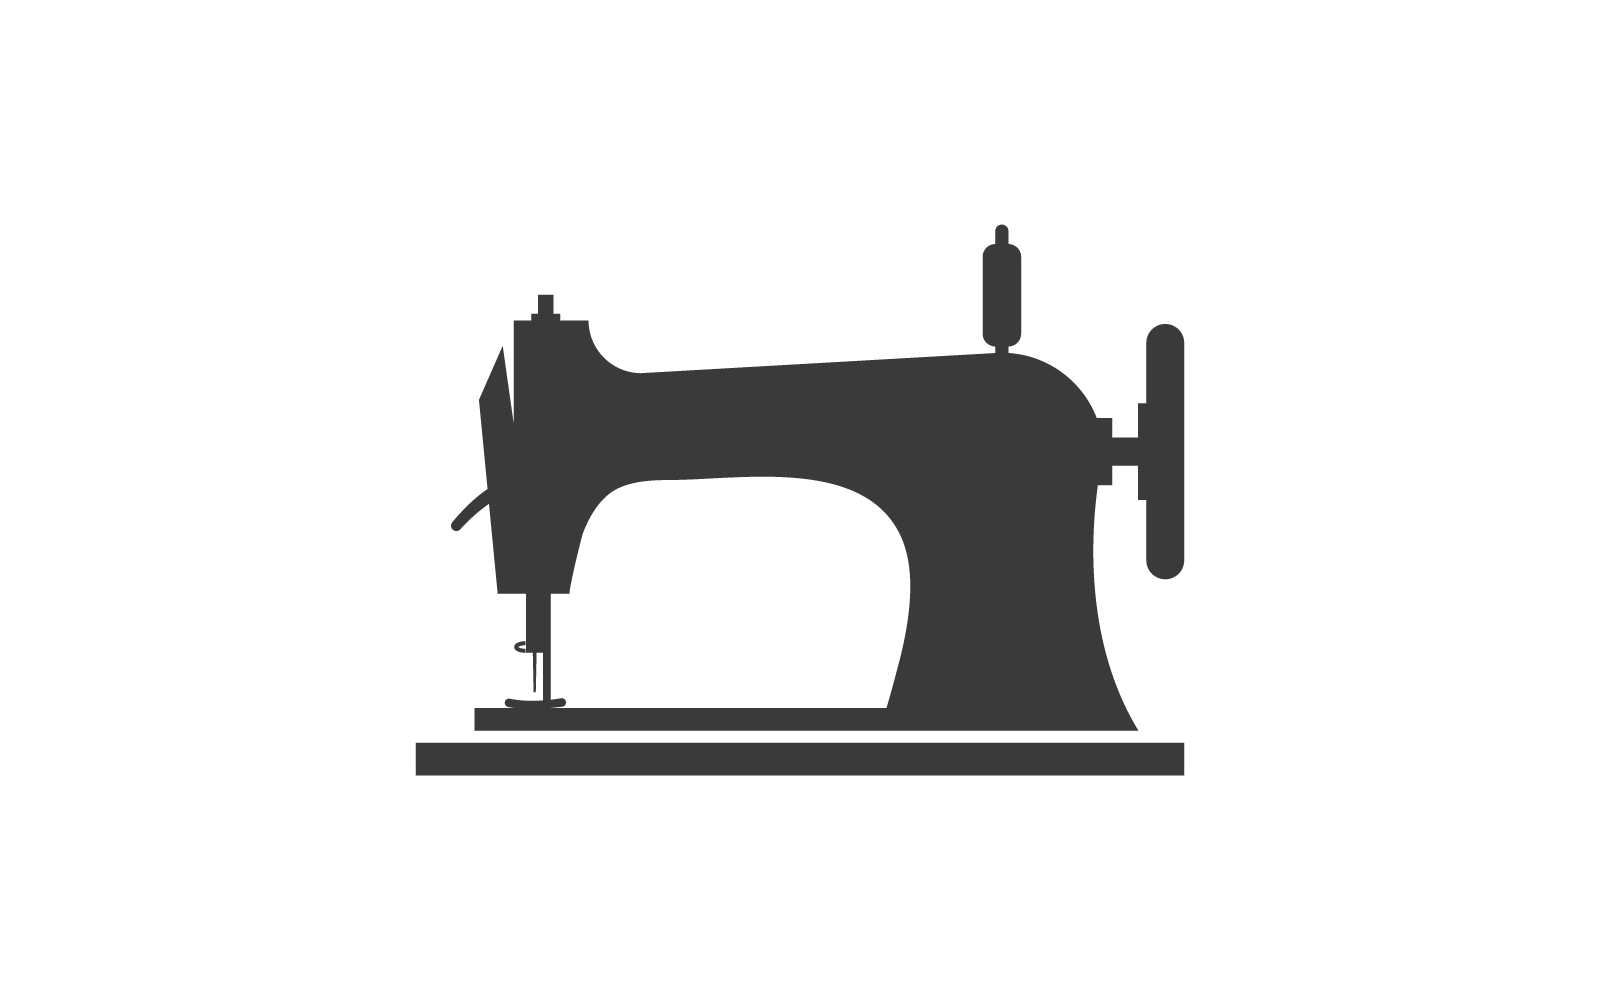 Tailor or textile logo vector flat design